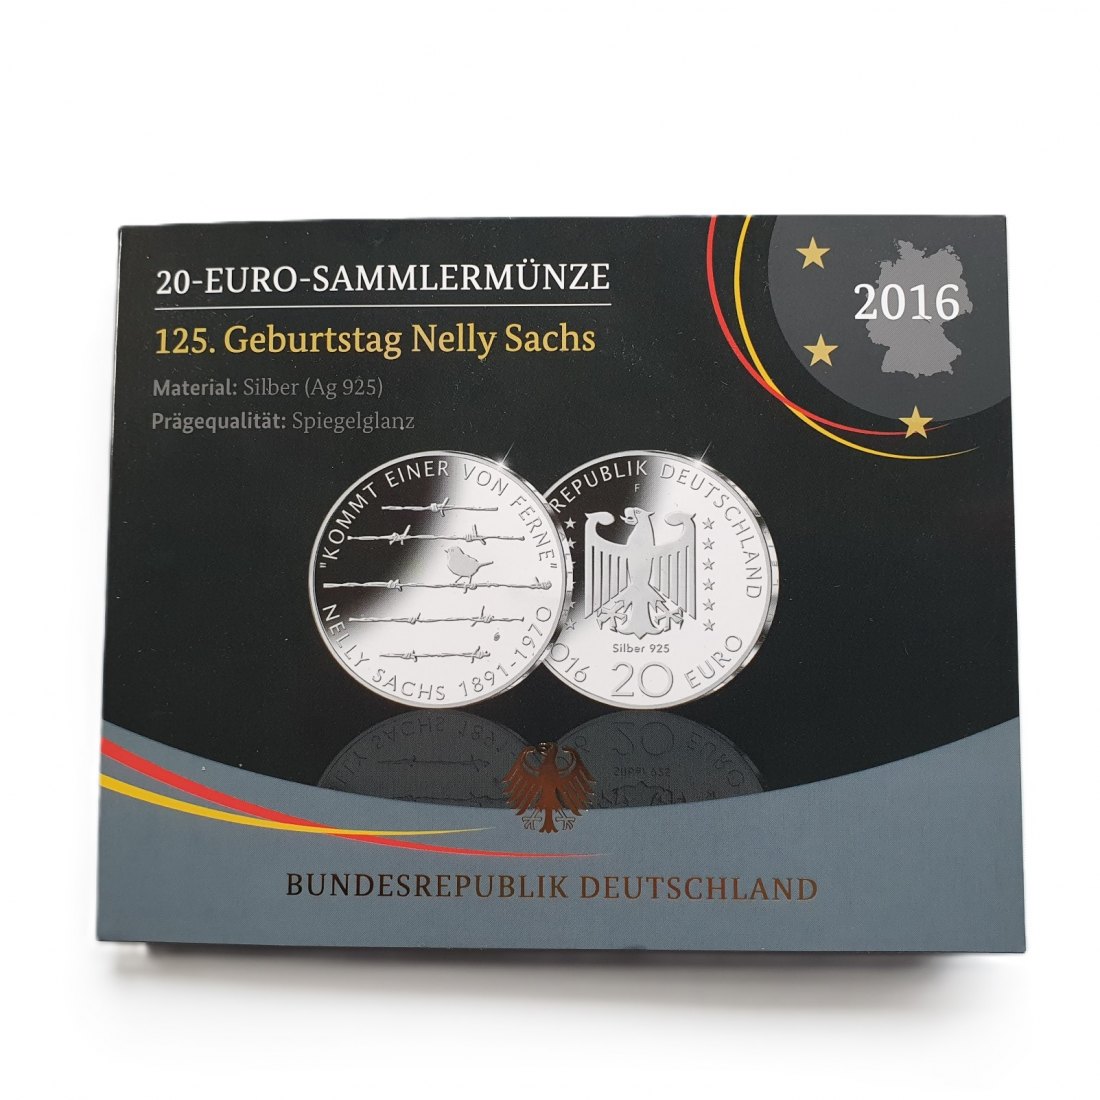  Deutschland 20 Euro 2016 F Sammlermünze 125. Geburtstag Nelly Sachs 925 Silber Spiegelglanz   